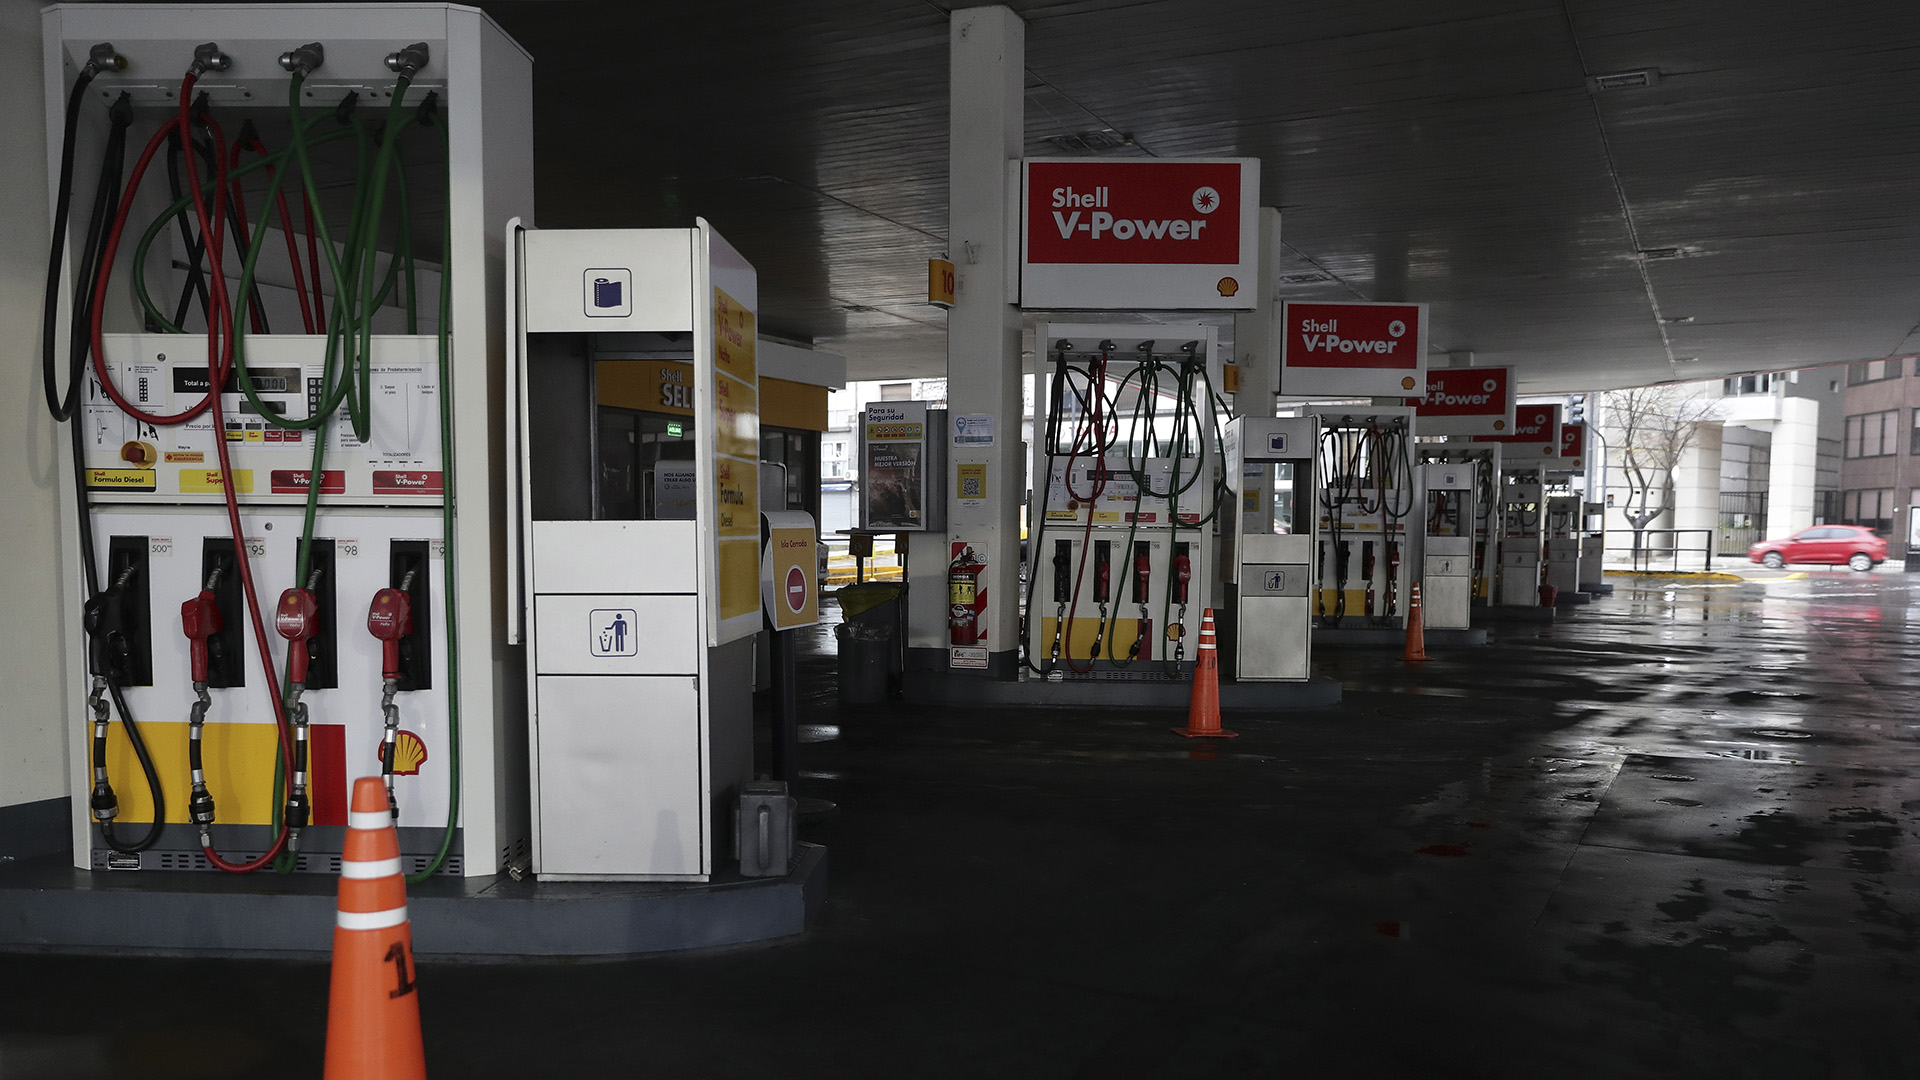 El mercado minorista de combustibles líquidos perdió ventas por 8,2 millones de metros cúbicos. (ALEJANDRO PAGNI / AFP)

